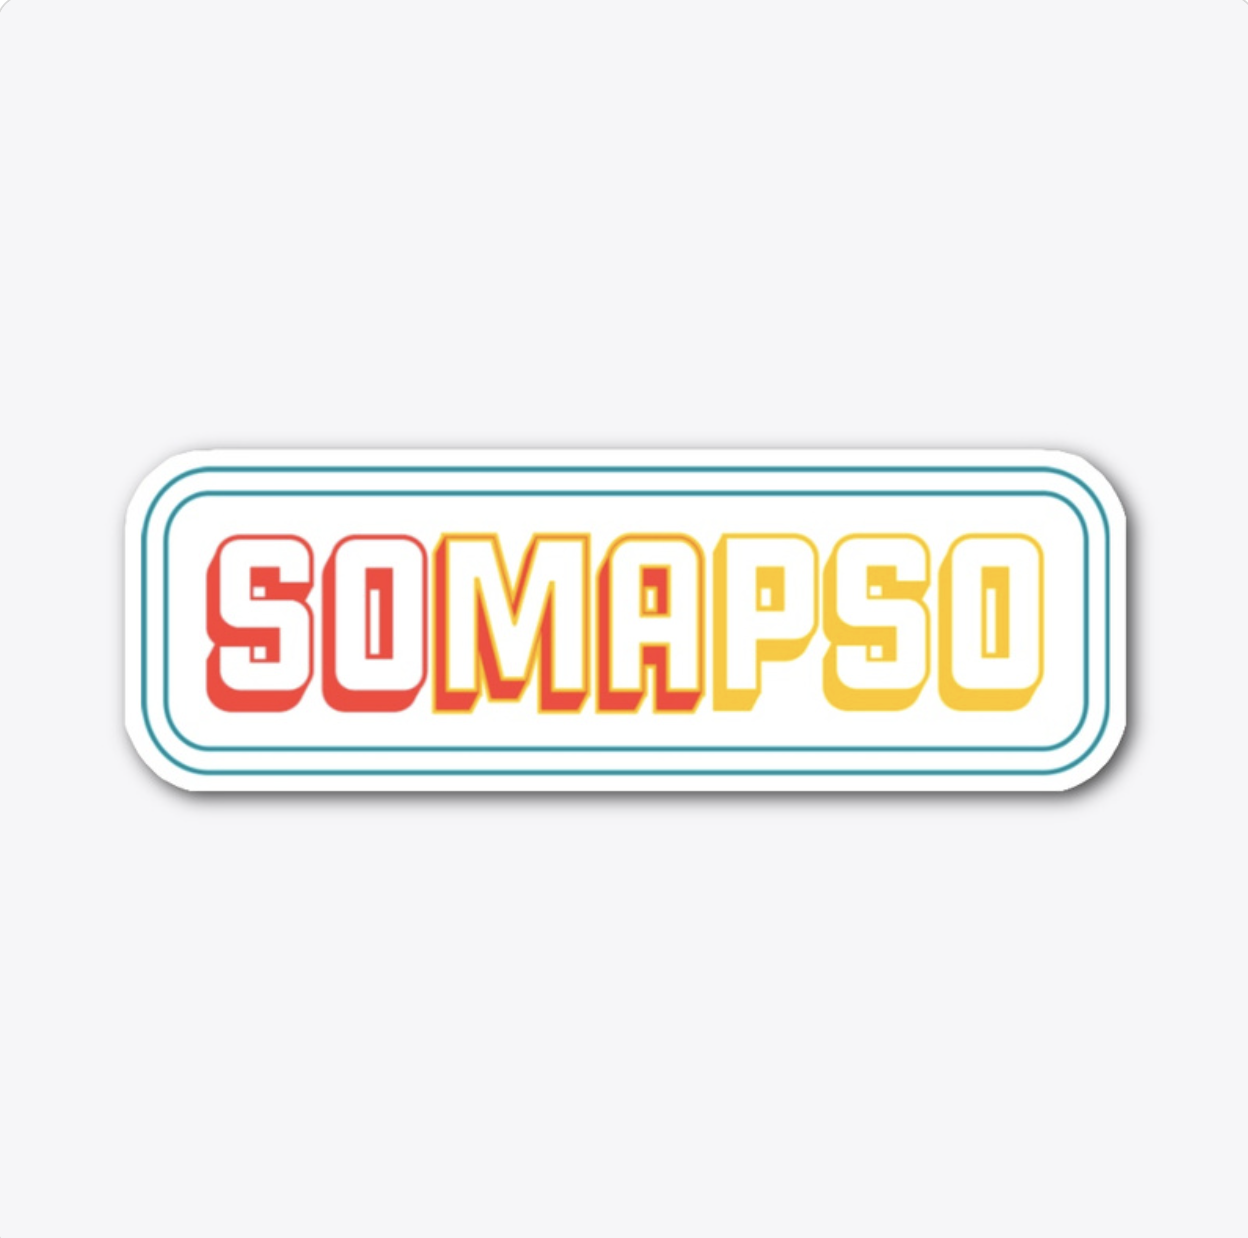 SOMAPSO Sticker - $7.99